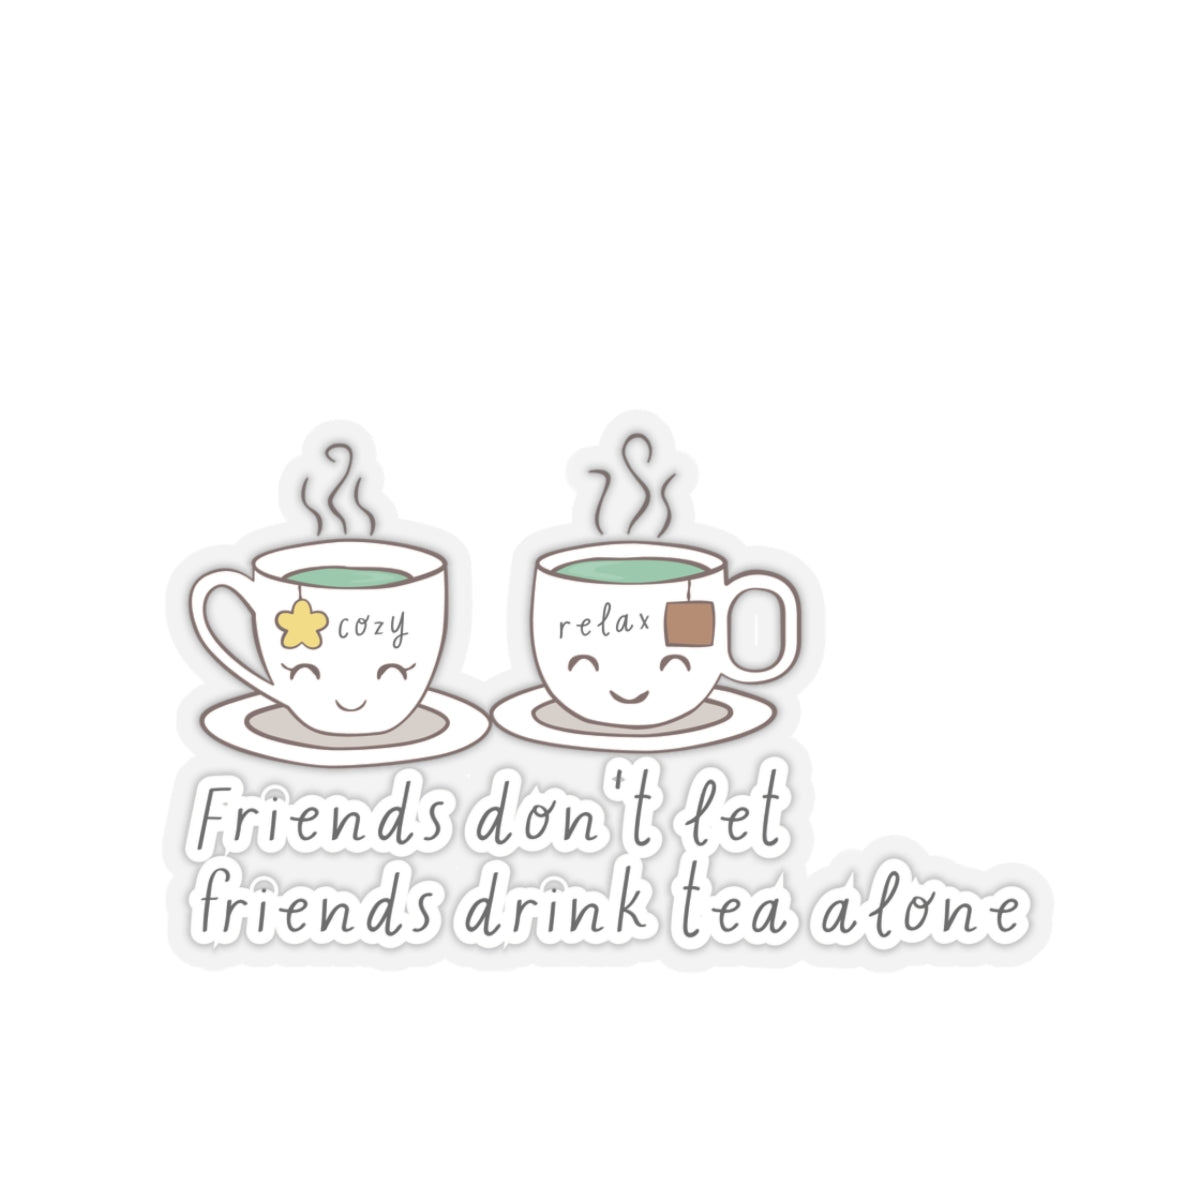 Friends Don't Let Friend Drink Tea Alone Kiss-Cut Stickers-Paper products-3" × 3"-Transparent-mysticalcherry